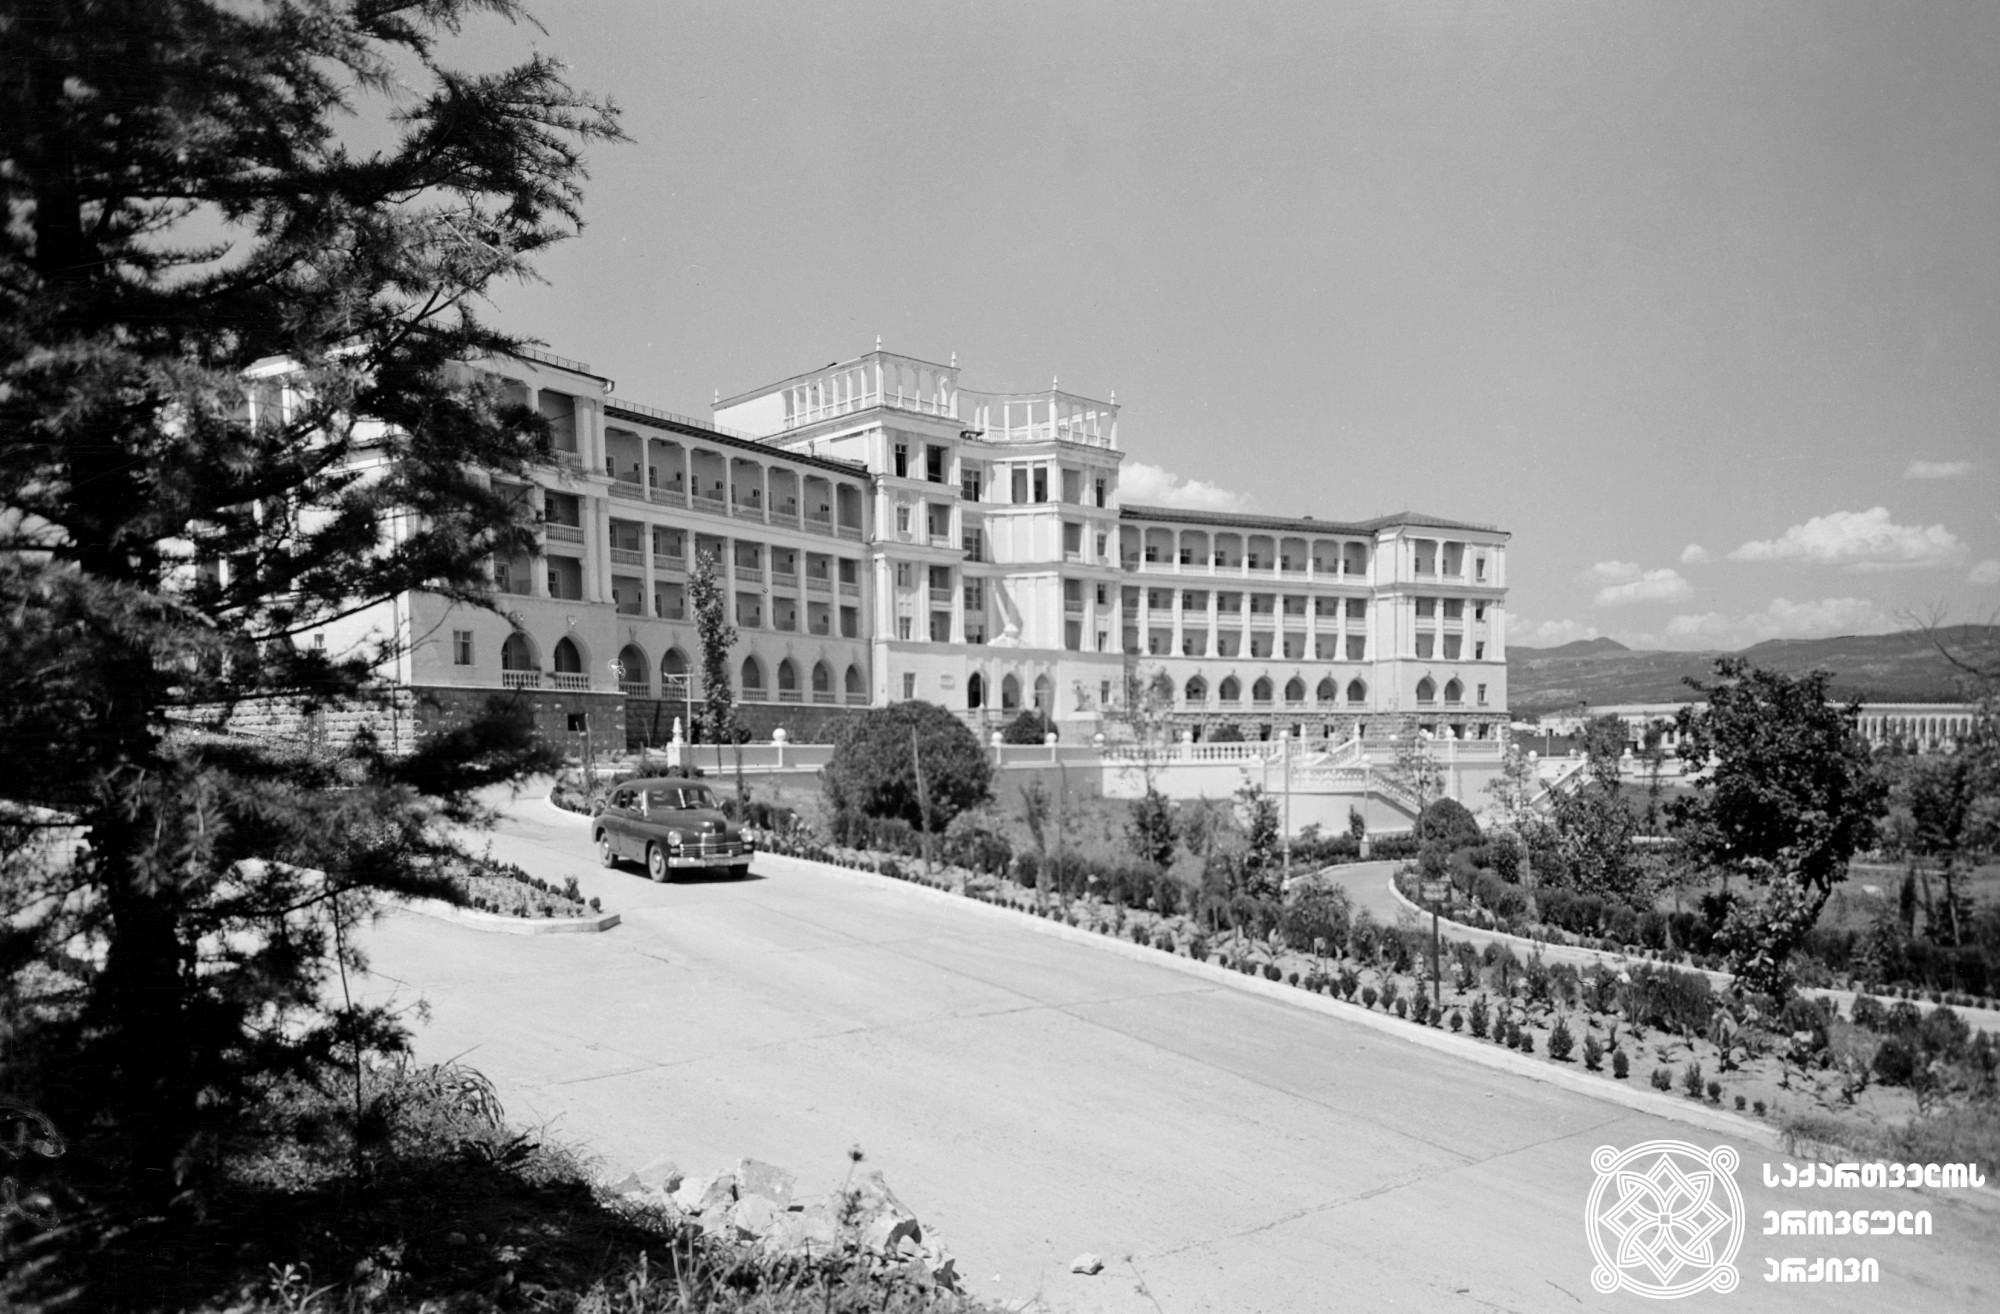 სანატორიუმი „თბილისი“. წყალტუბო, 1960 წელი. <br>
ფოტოს ავტორი პ. ლუცენკო. <br>
The Sanatorium “Tbilisi”. Tskaltubo, 1960. <br>
Photo by P. Lutsenko.